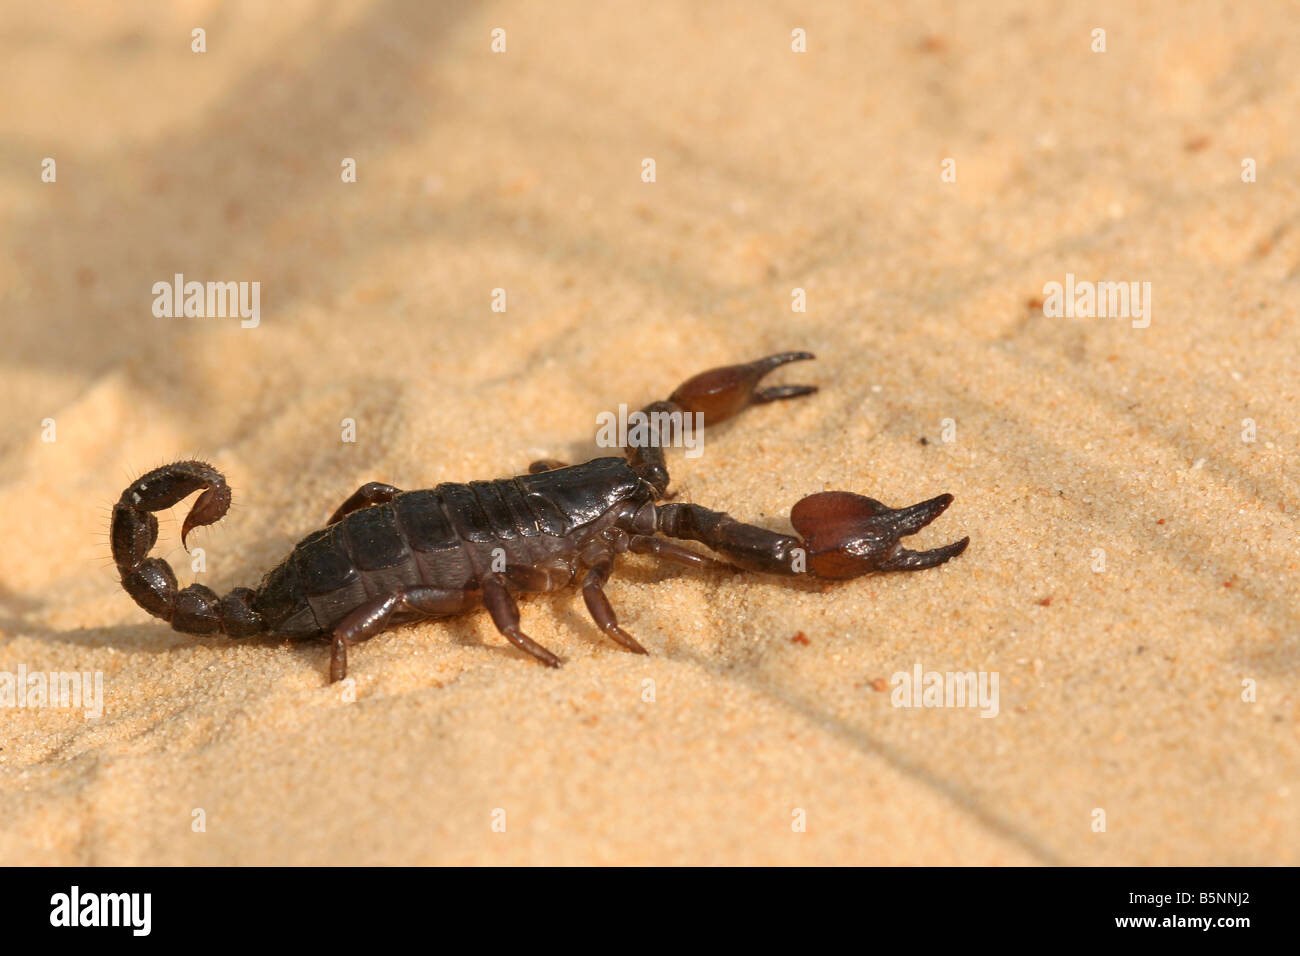 Scorpion scorpion noir israélien maurus fuscus sur une dune de sable d'été d'Israël Septembre 2008 Banque D'Images